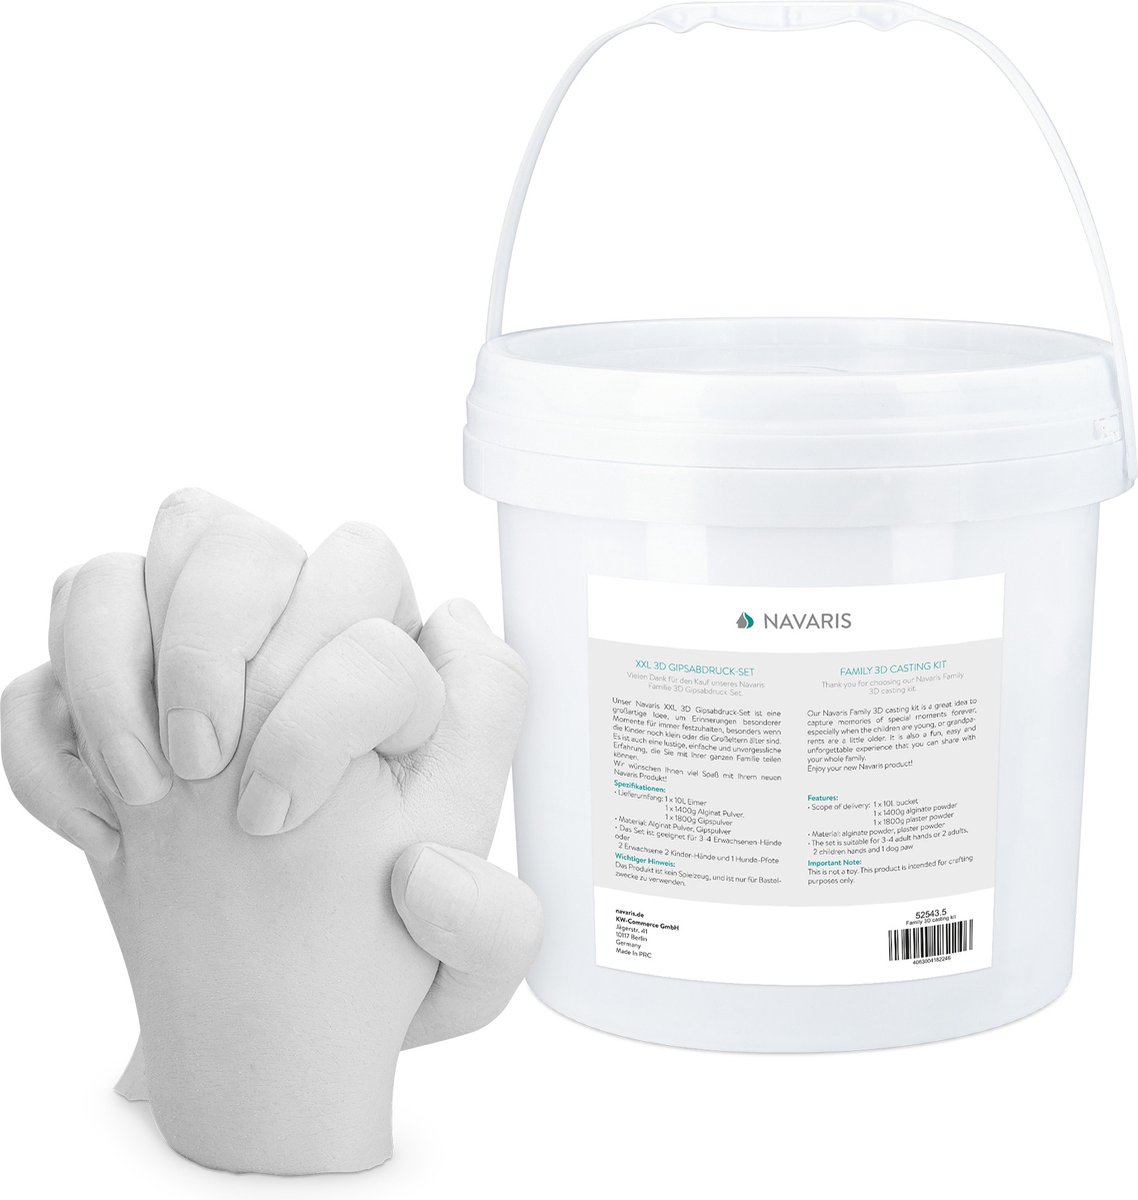 Navaris 3D gipsafdruk set XXL - Voor handen of voeten - Handgietset met mengemmer van 10 liter - Voor volwassenen, kinderen en baby's - pH-neutraal